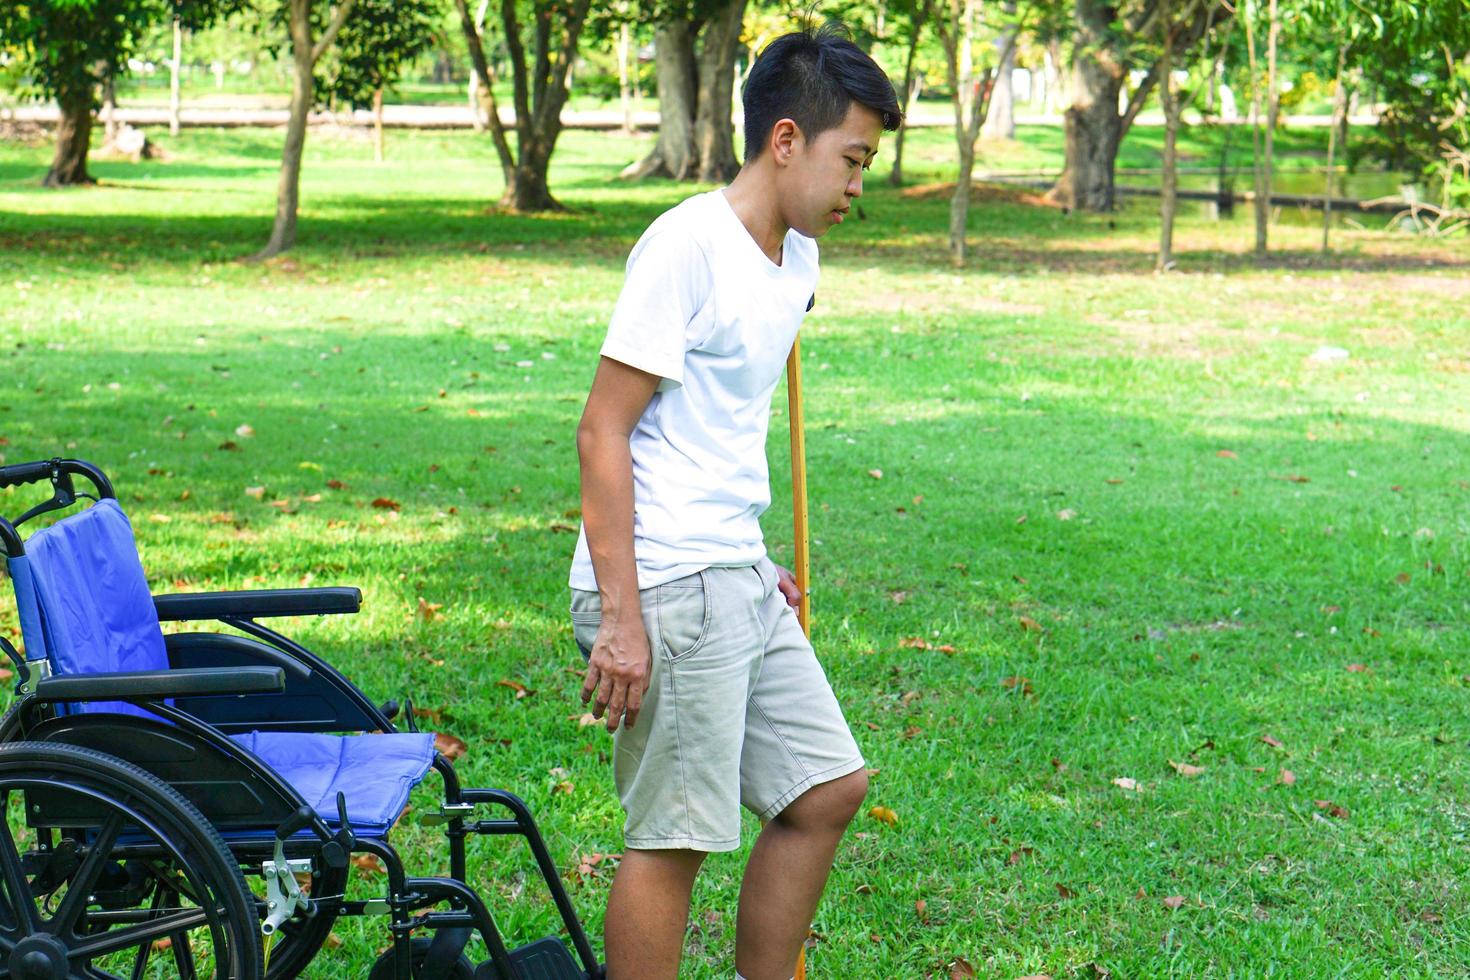 Der Patient stieg aus dem Rollstuhl und benutzte eine Krücke, um ihn beim Gehen auf dem Rasen zu unterstützen. gesundheitswesen und medizinisches konzept. foto